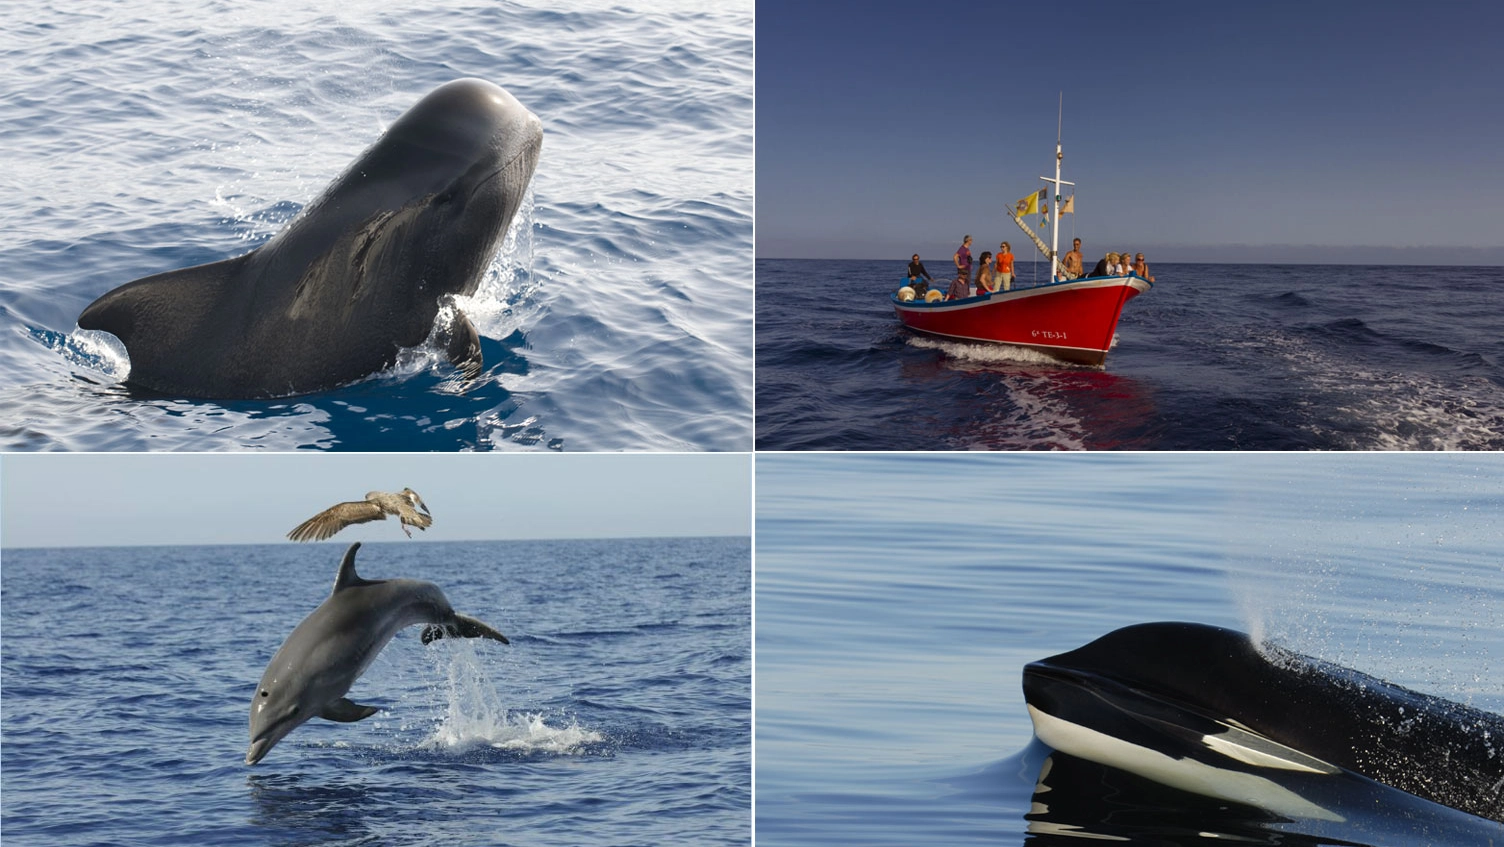 L’arcipelago spagnolo nell’oceano Atlantico è la principale destinazione europea per l’osservazione dei cetacei nel loro habitat naturale